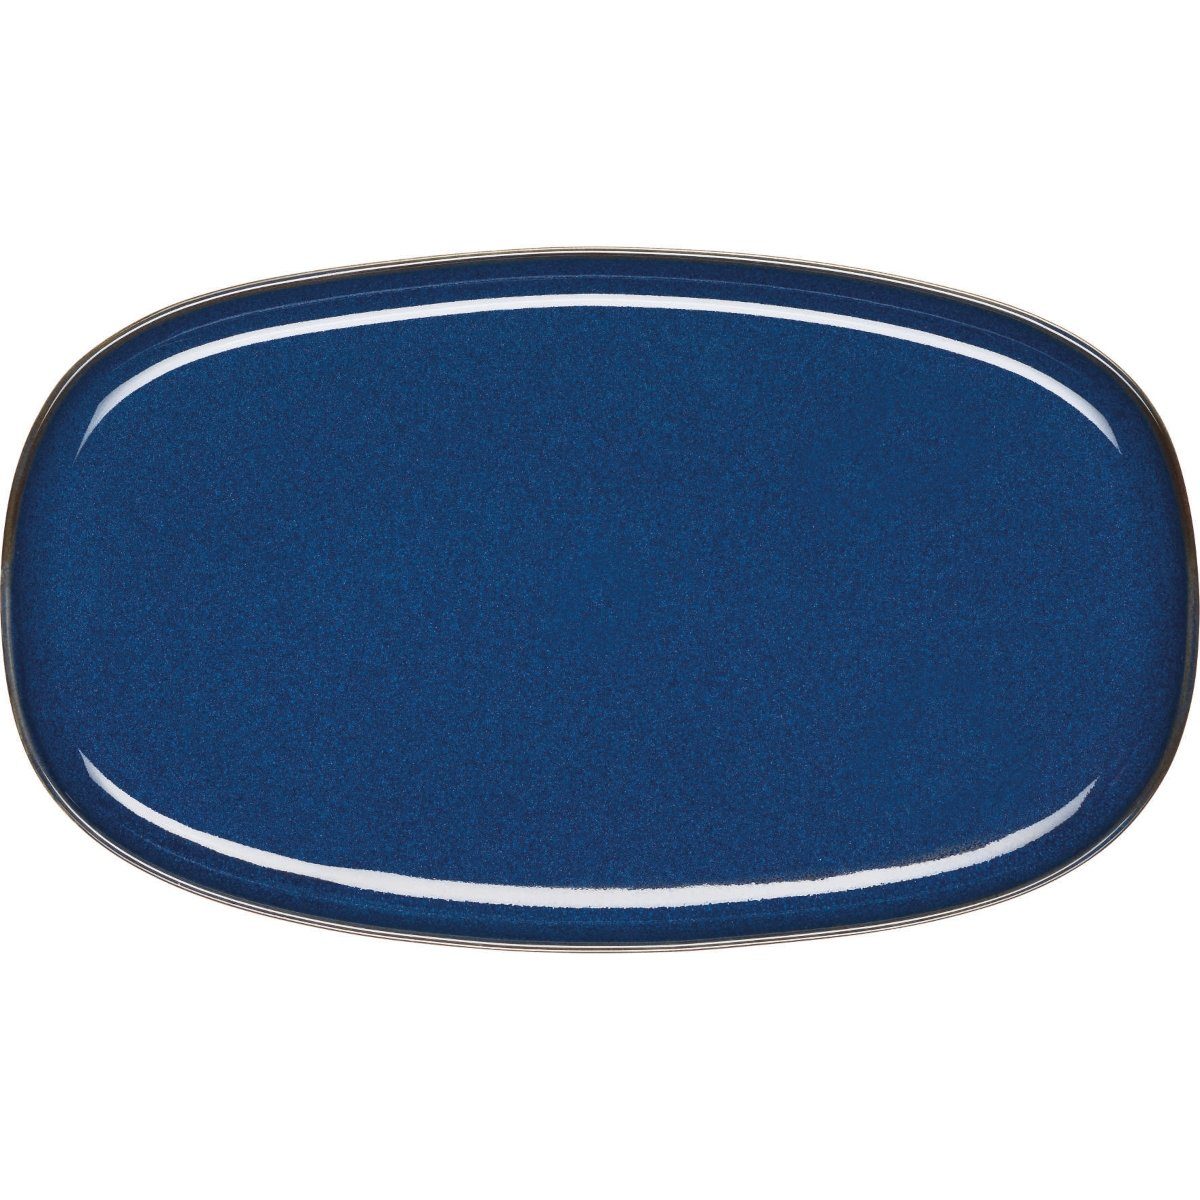 ASA SELECTION Servierplatte SAISONS Platte oval midnight blue 31 x 18 cm, Steinzeug, (Platte oval)